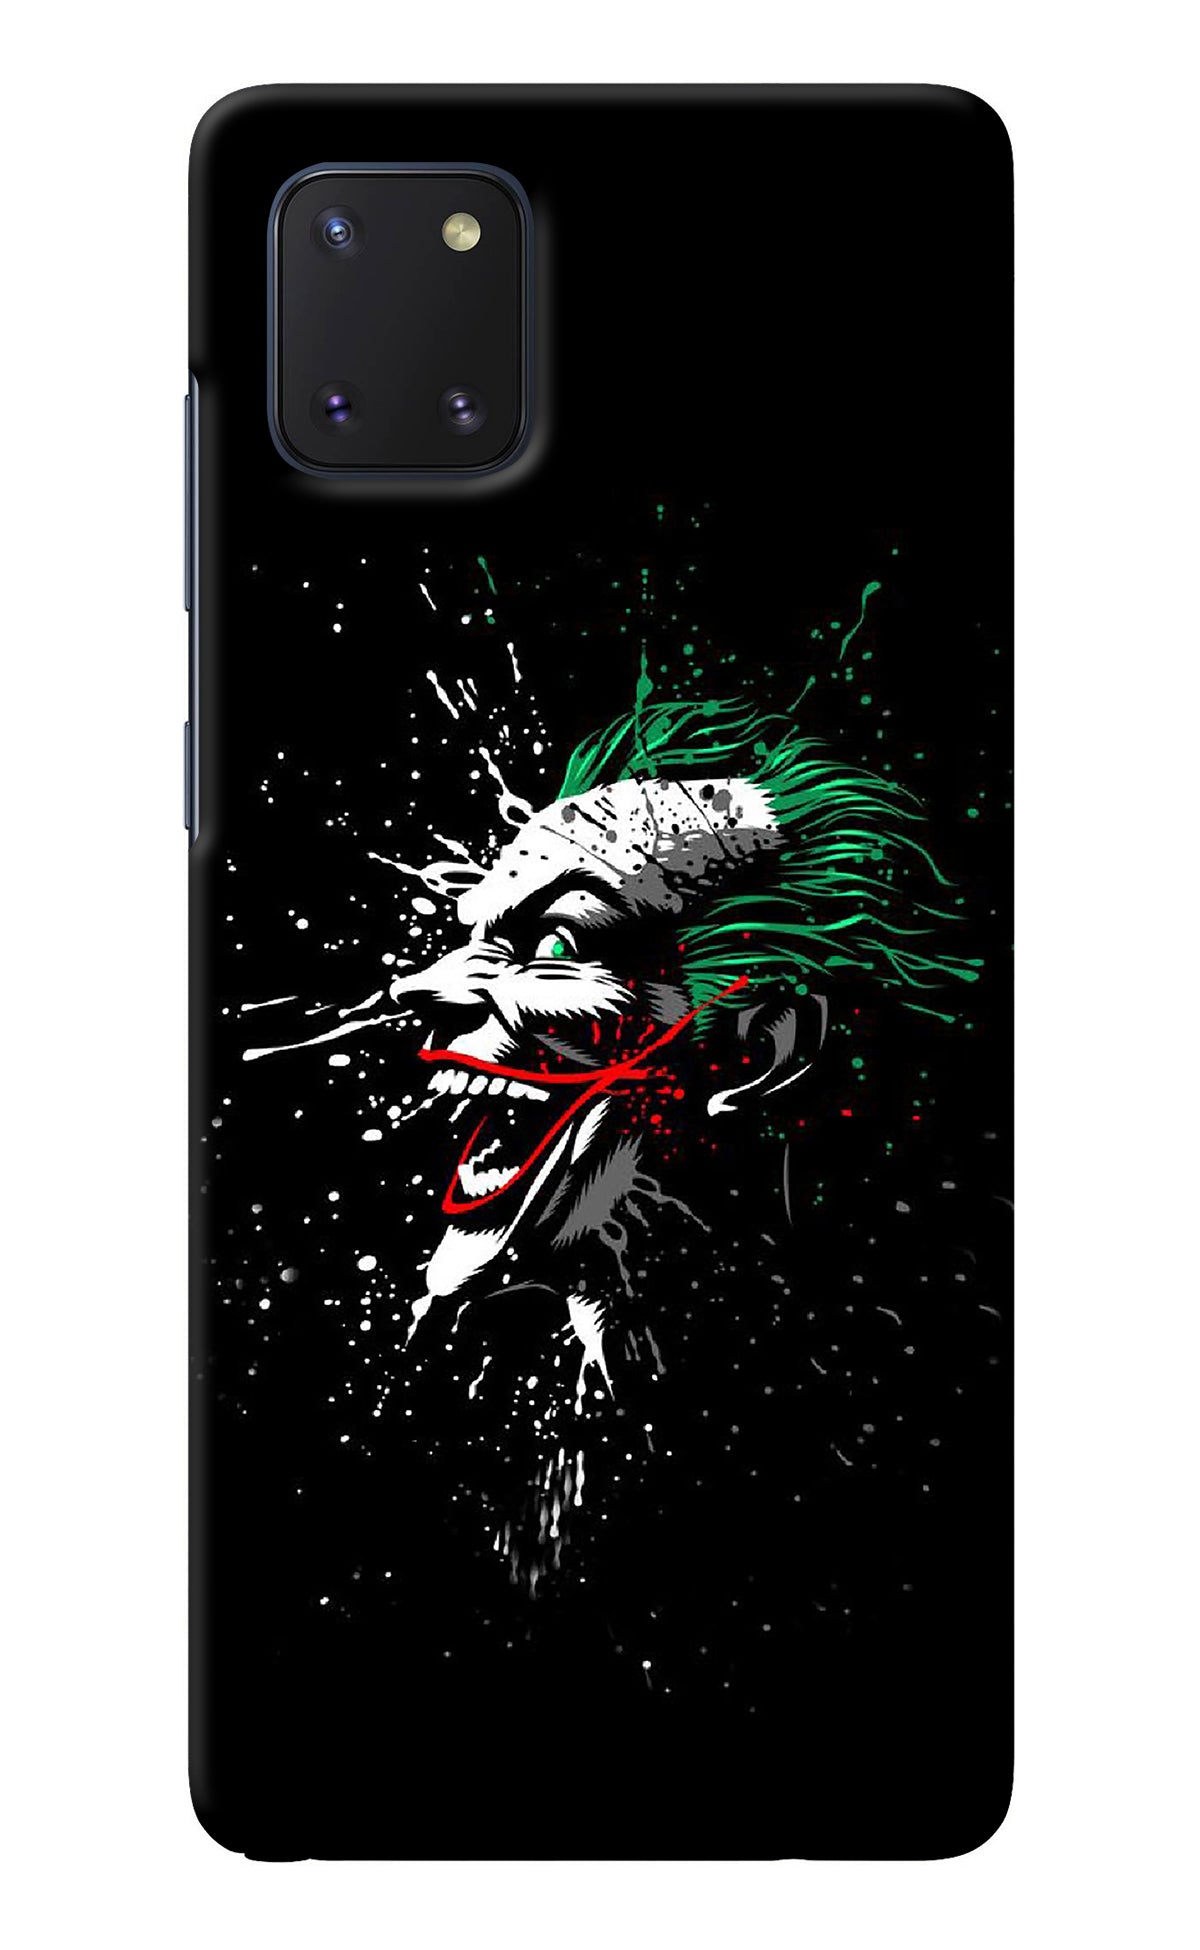 Joker Samsung Note 10 Lite Back Cover